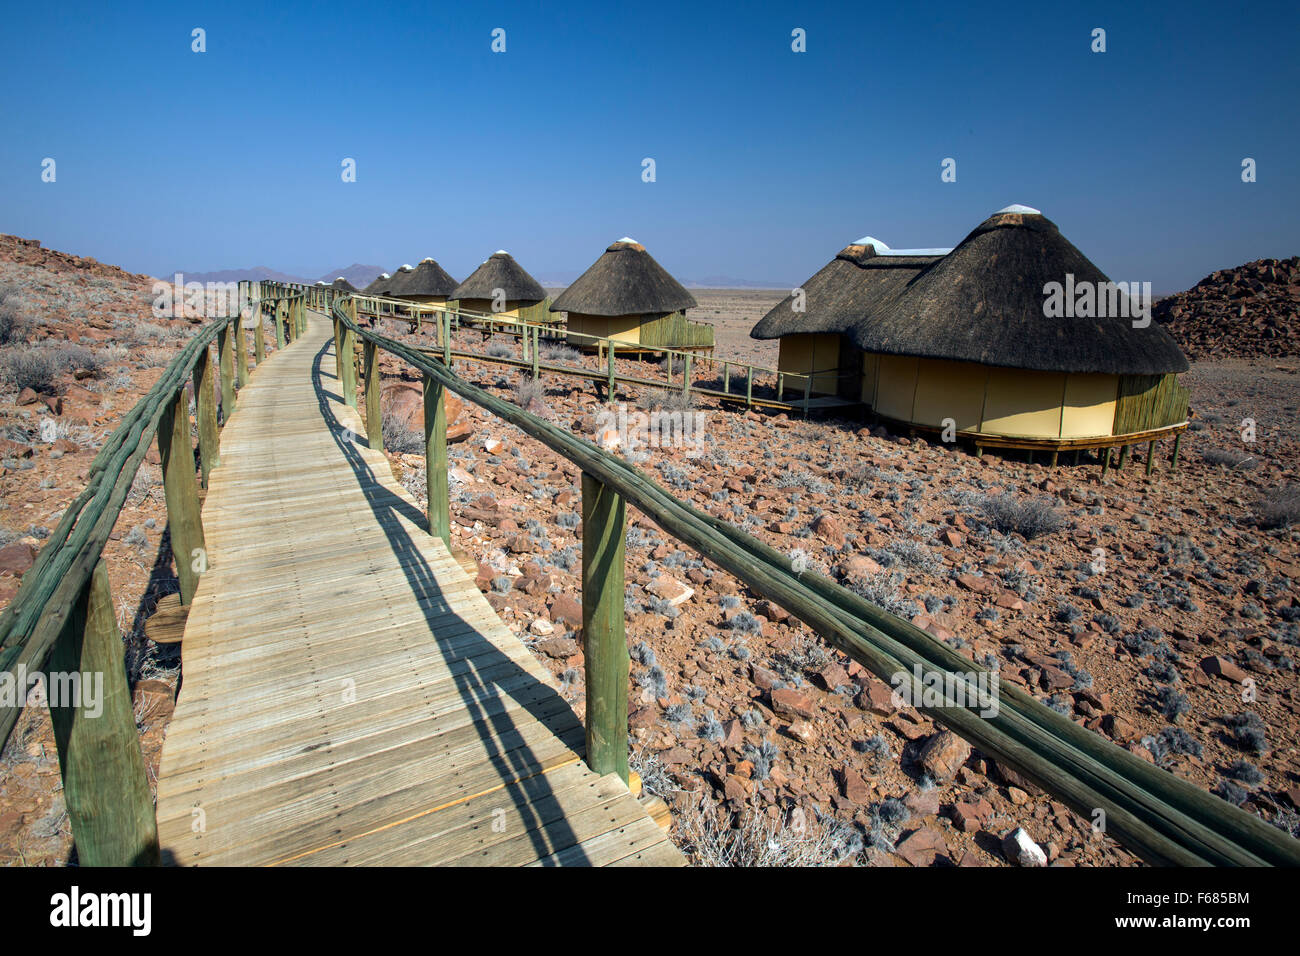 Sossus Dune Lodge huttes de chaume à Sossusvlei, Namibie, Afrique Banque D'Images